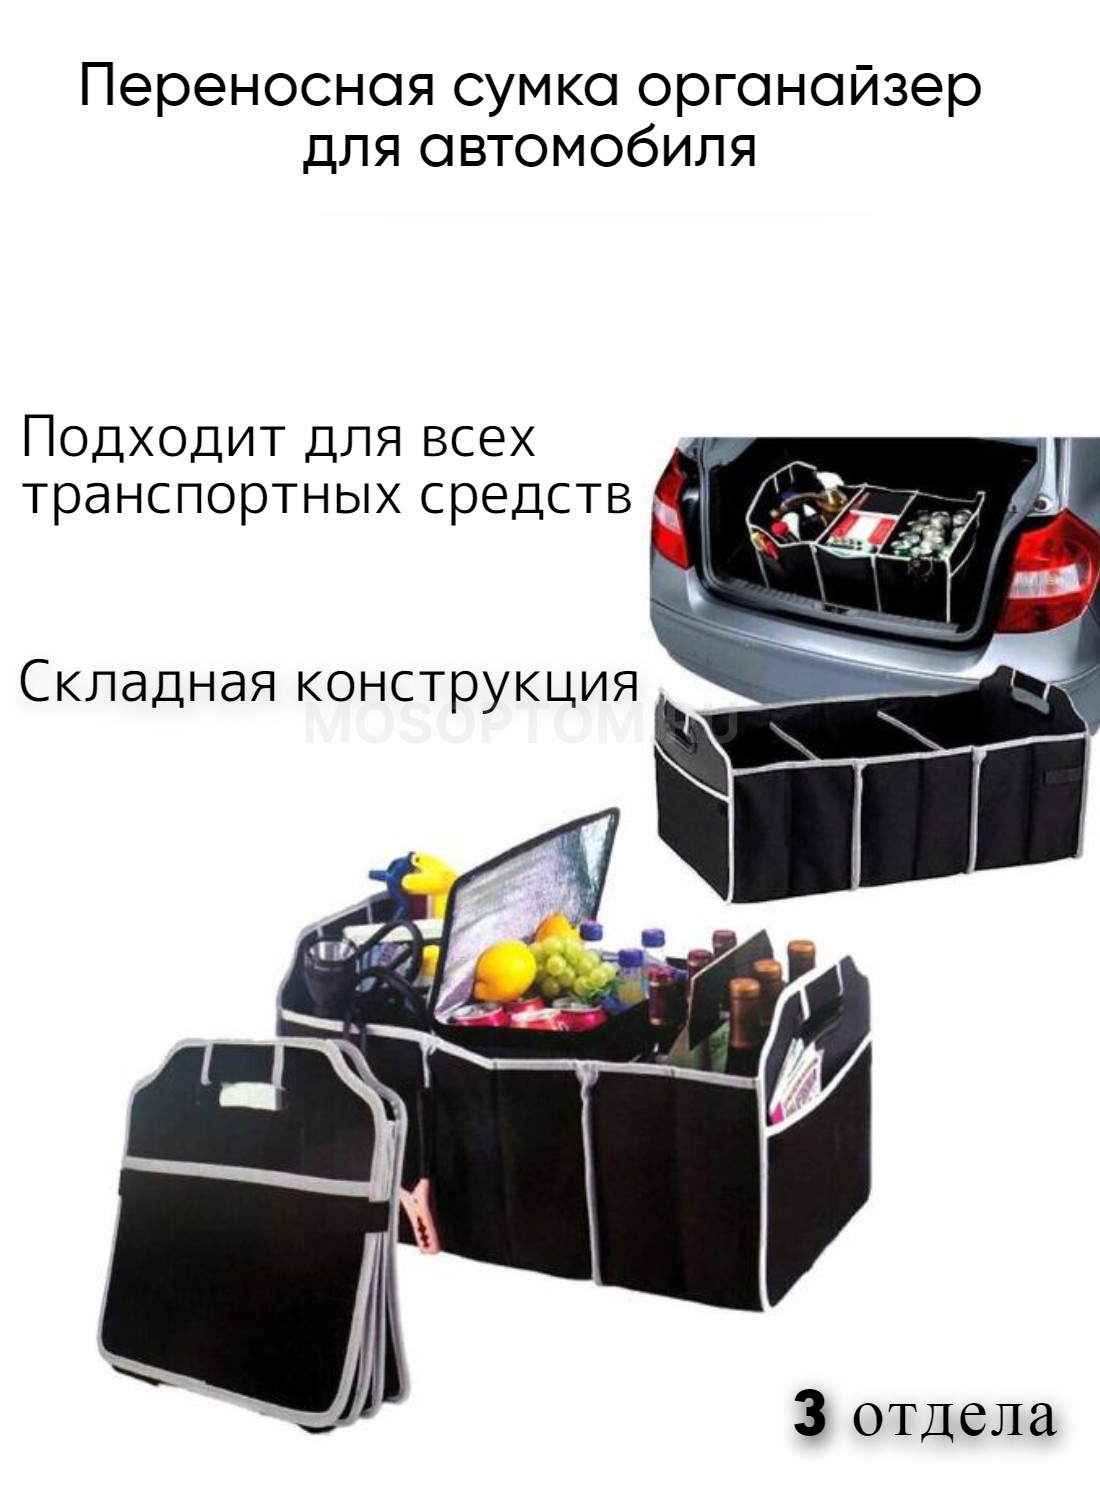 Переносная складная сумка-органайзер в багажник автомобиля оптом - Фото №3